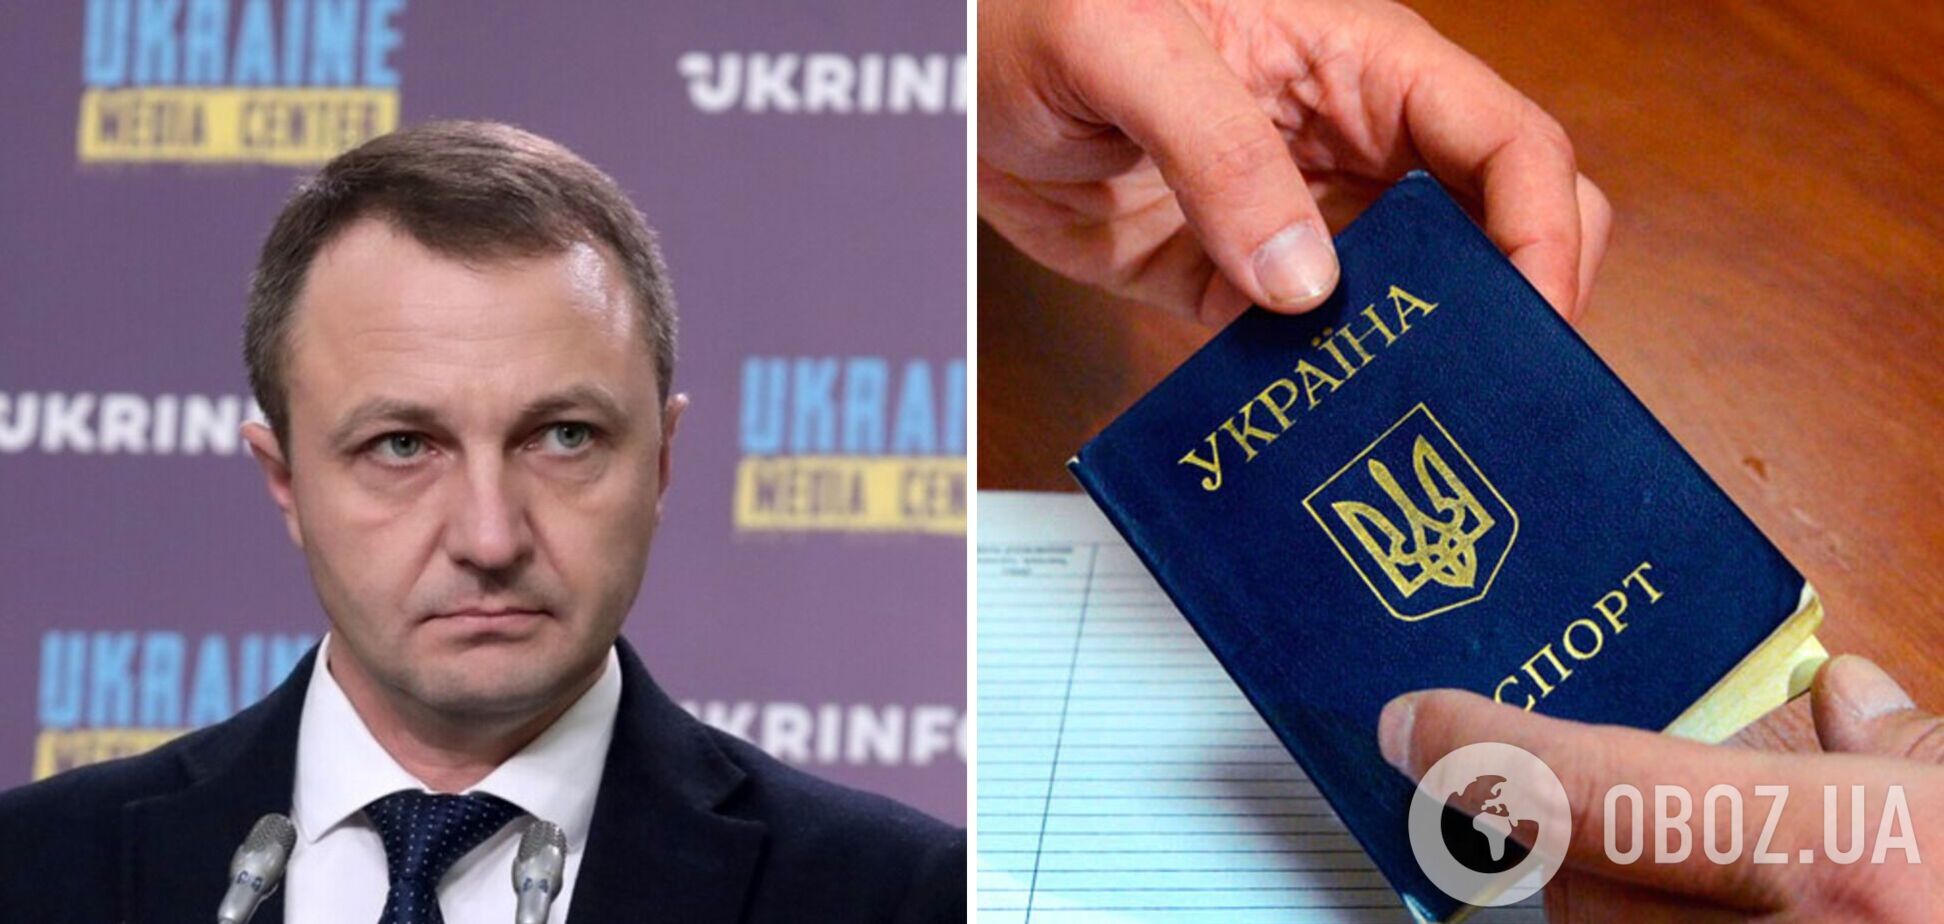 З українських паспортів хочуть прибрати російську мову: заява омбудсмена